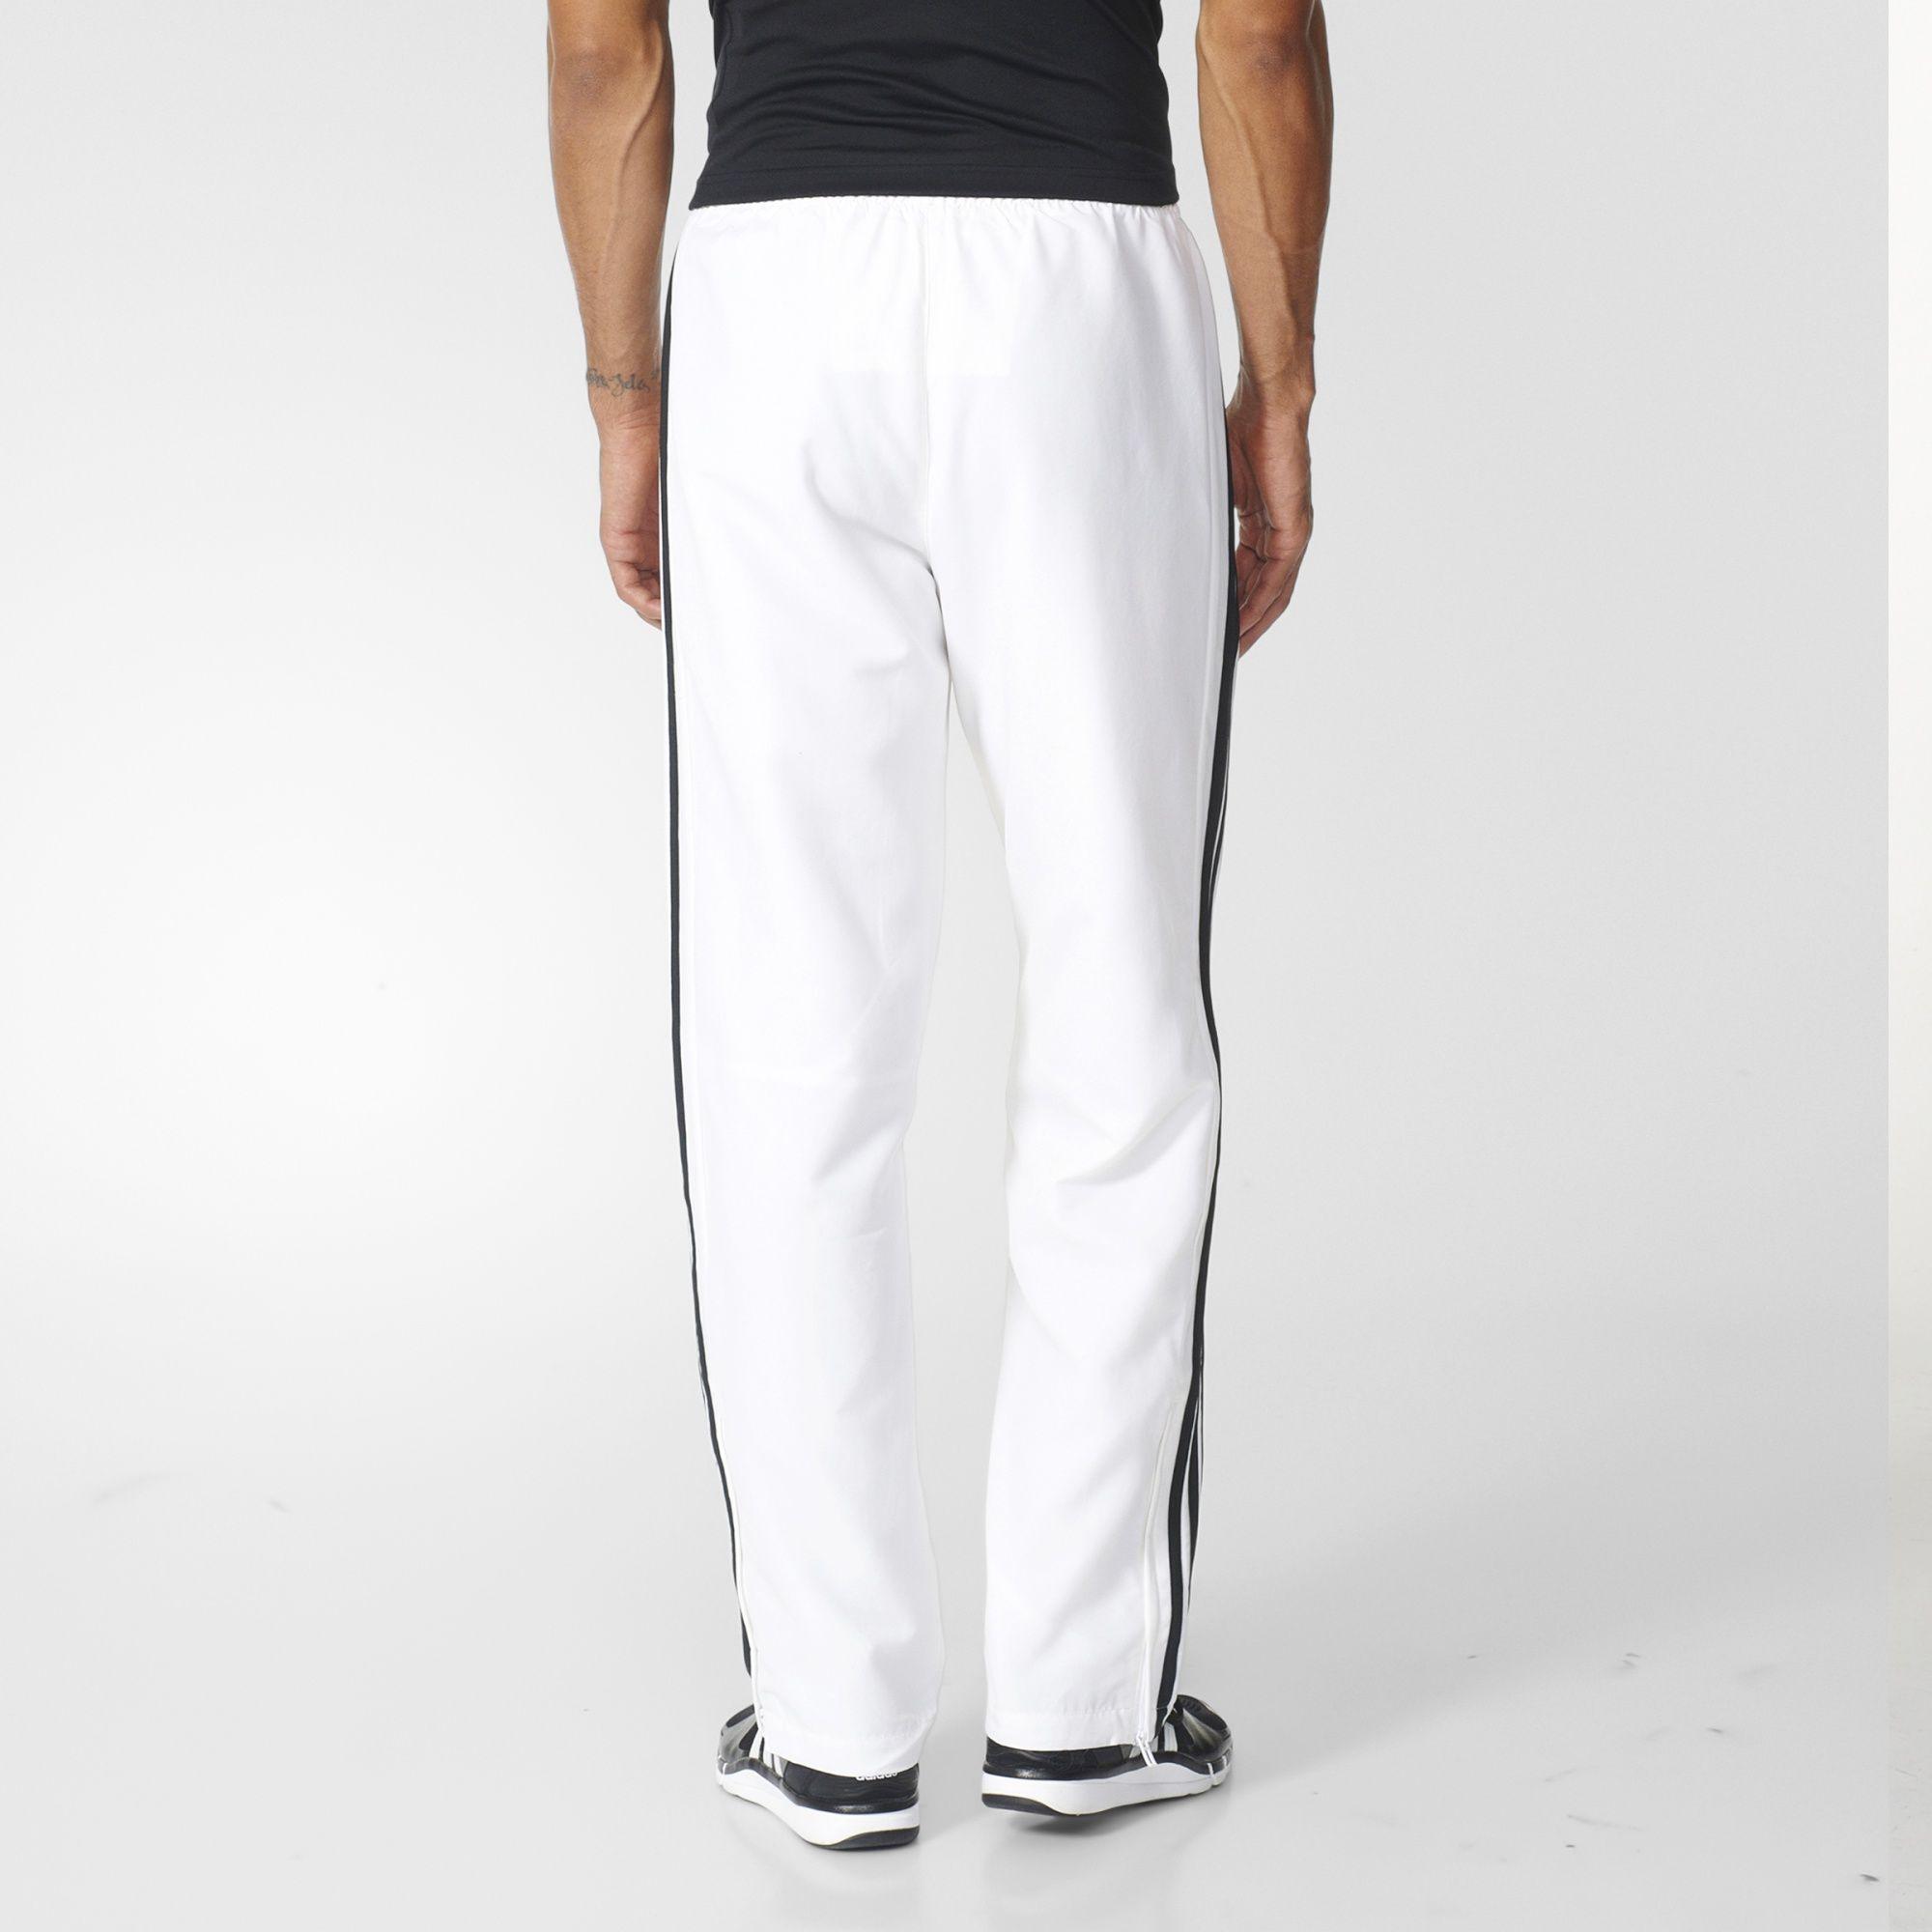 Adidas Mens T16 Team Pants - White - Tennisnuts.com